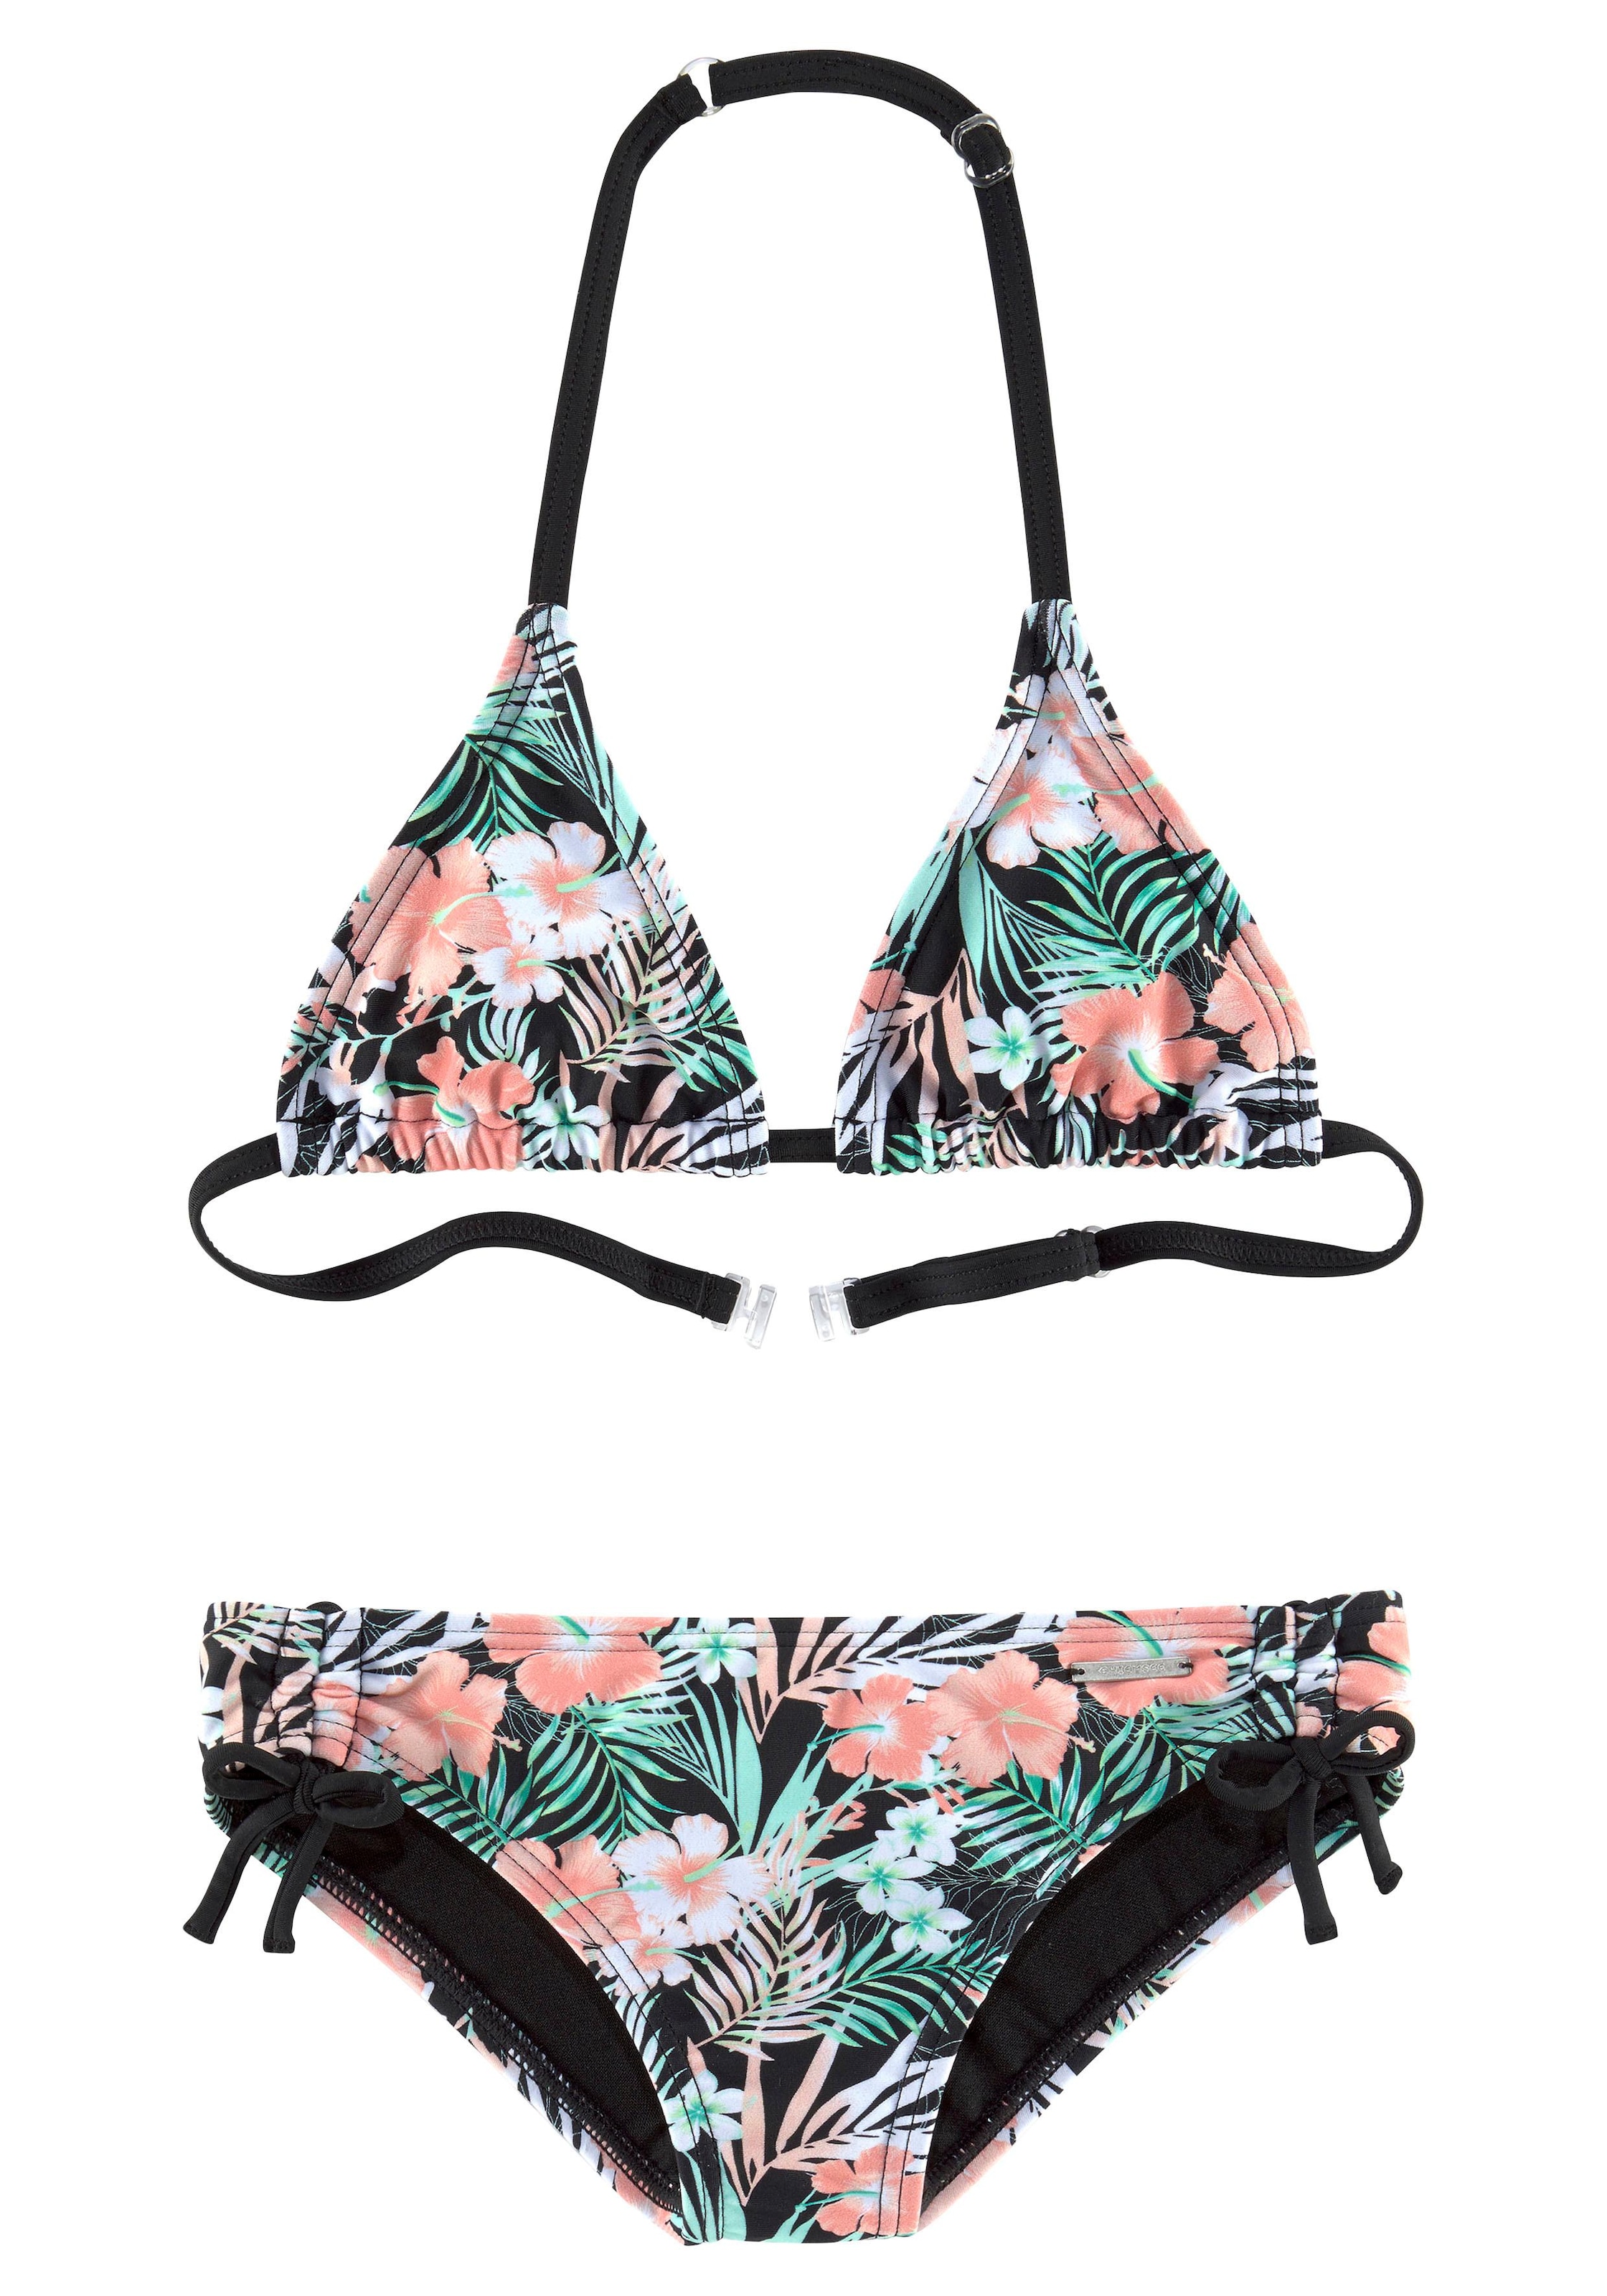 Triangel-Bikini, floralem bei Design Chiemsee mit